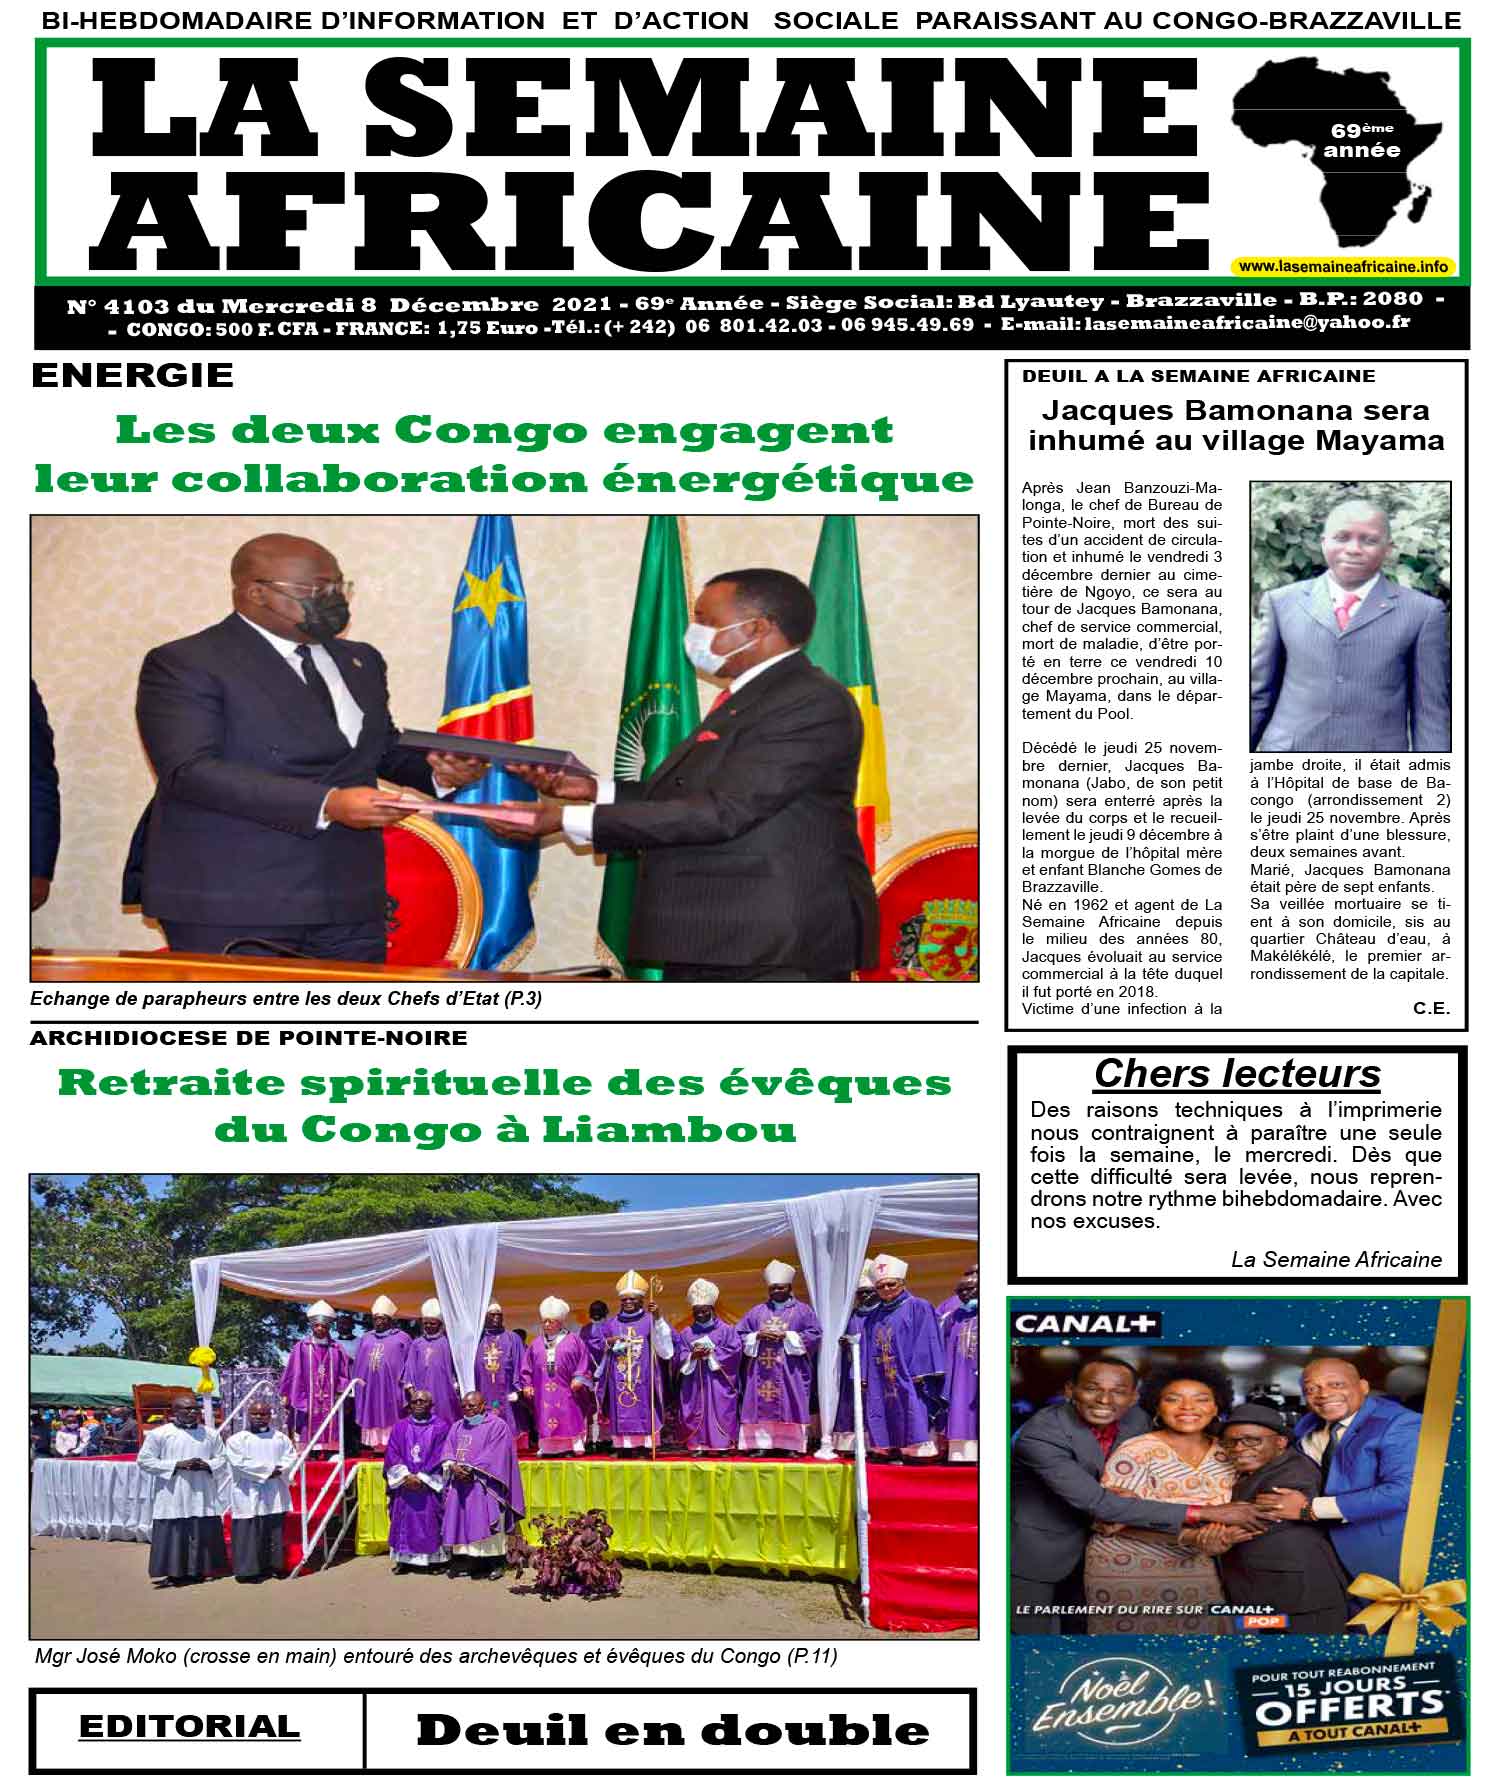 Cover La Semaine Africaine - 4103 